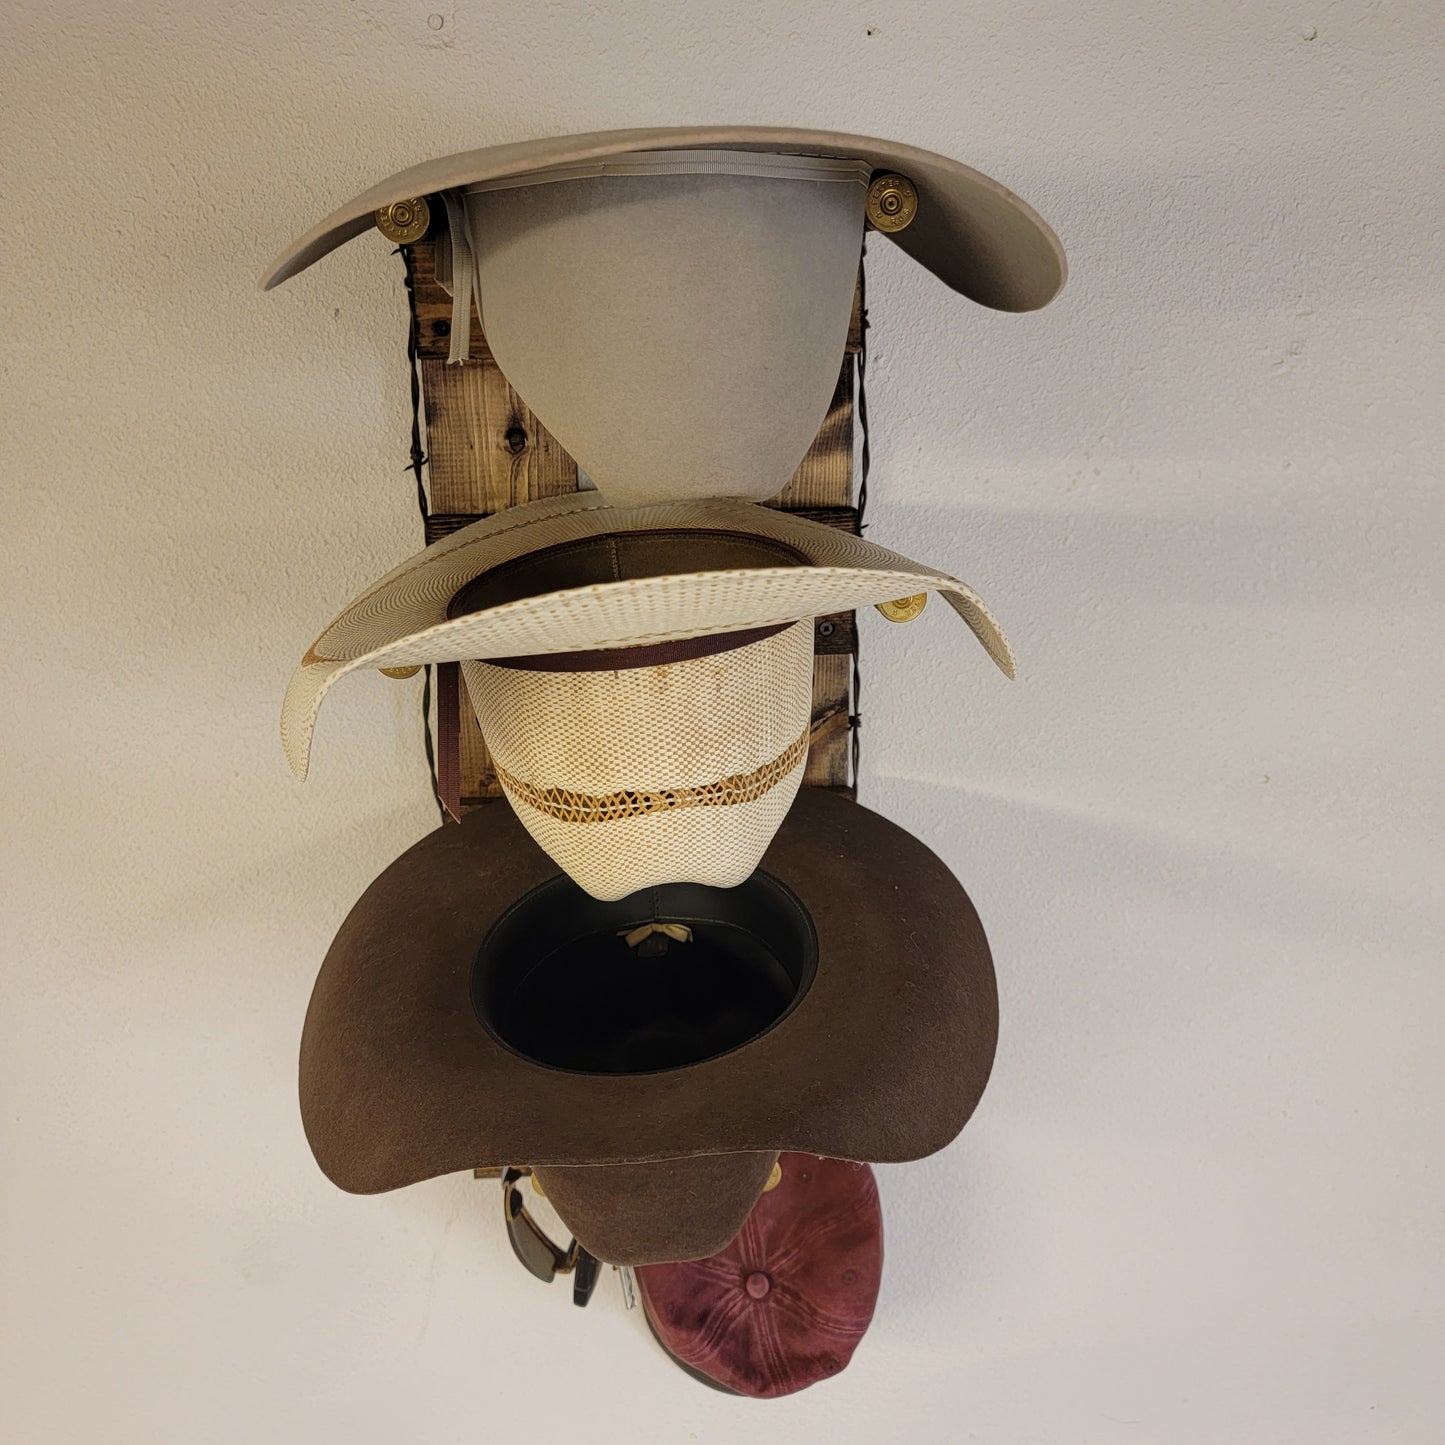 3V - Cowboy Hat Rack - 3 Hat Vertical Functional Western Decor